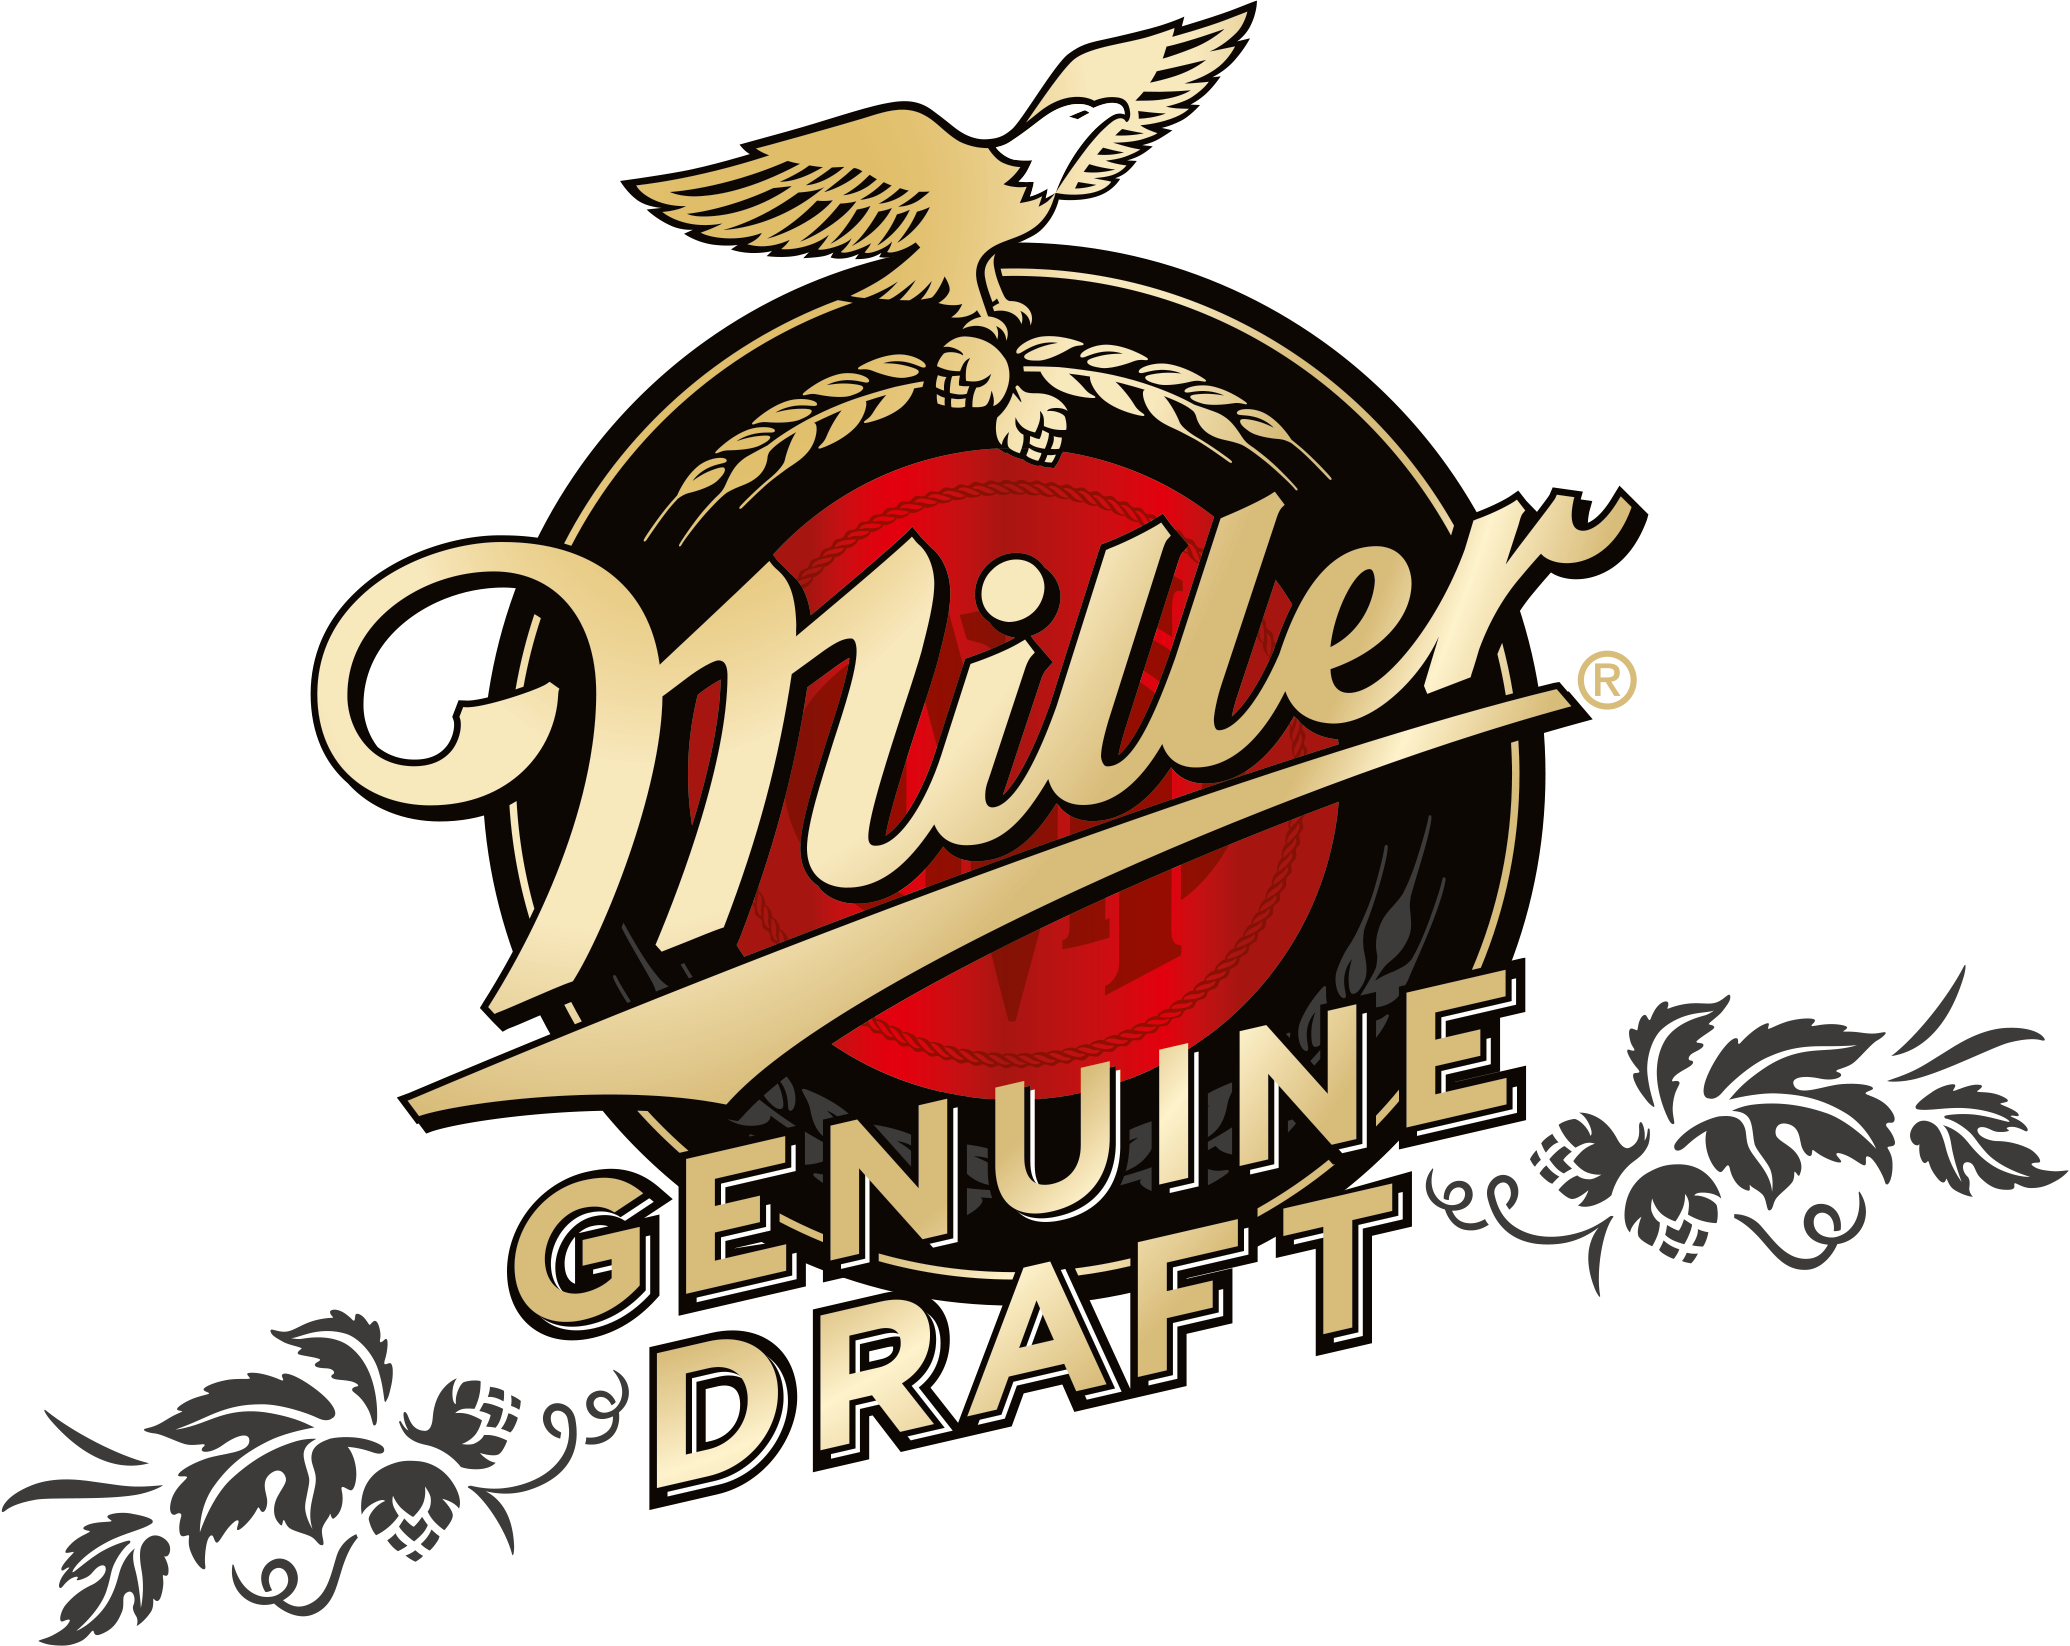 Миллер miller. Пиво Миллер Дженьюин ДРАФТ. Miller пиво логотип. Миллер пиво этикетка. Пивные бренды логотипы.